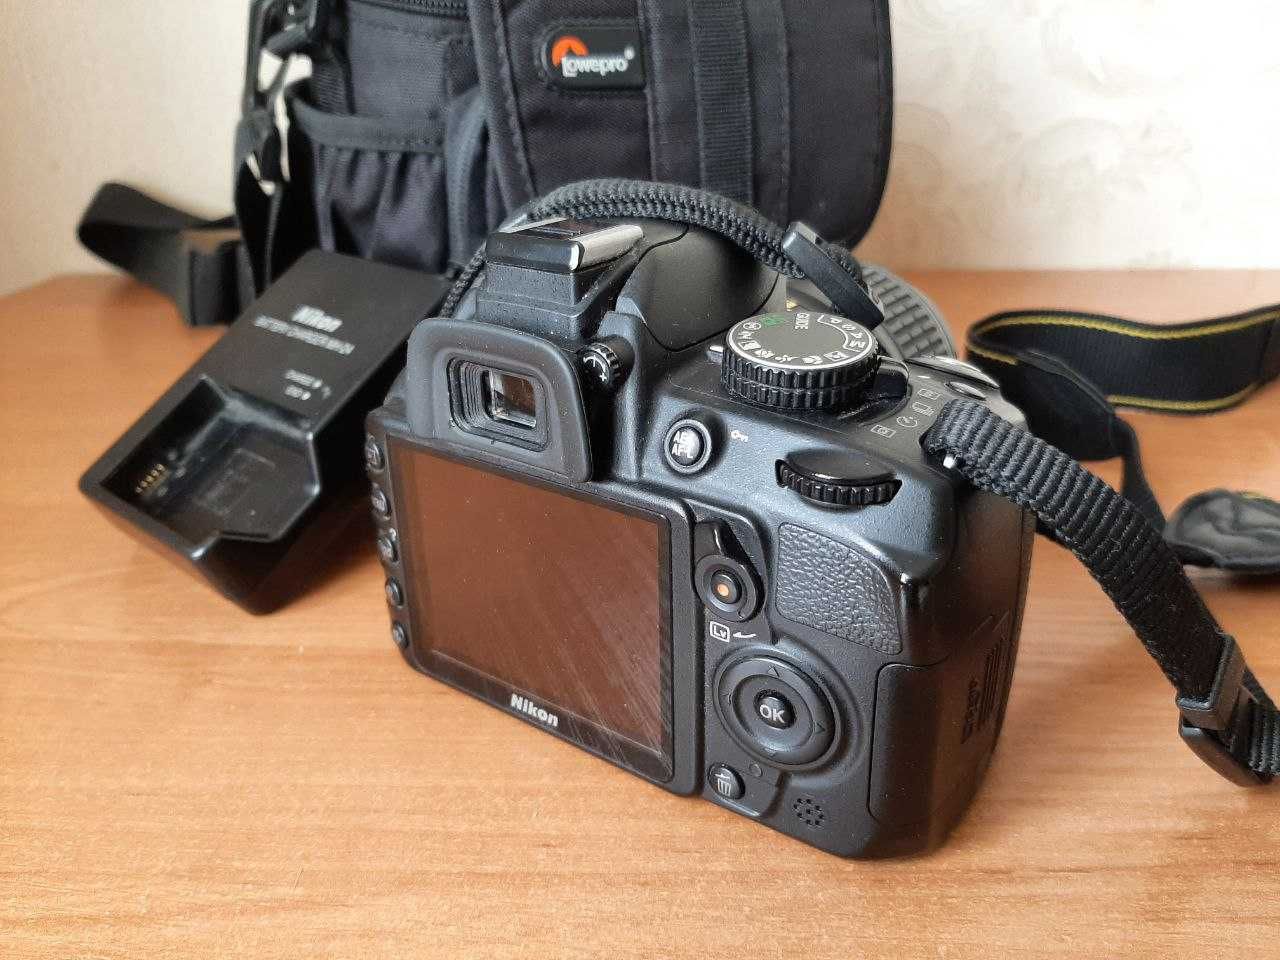 Продам фотоапарат Nikon 3100